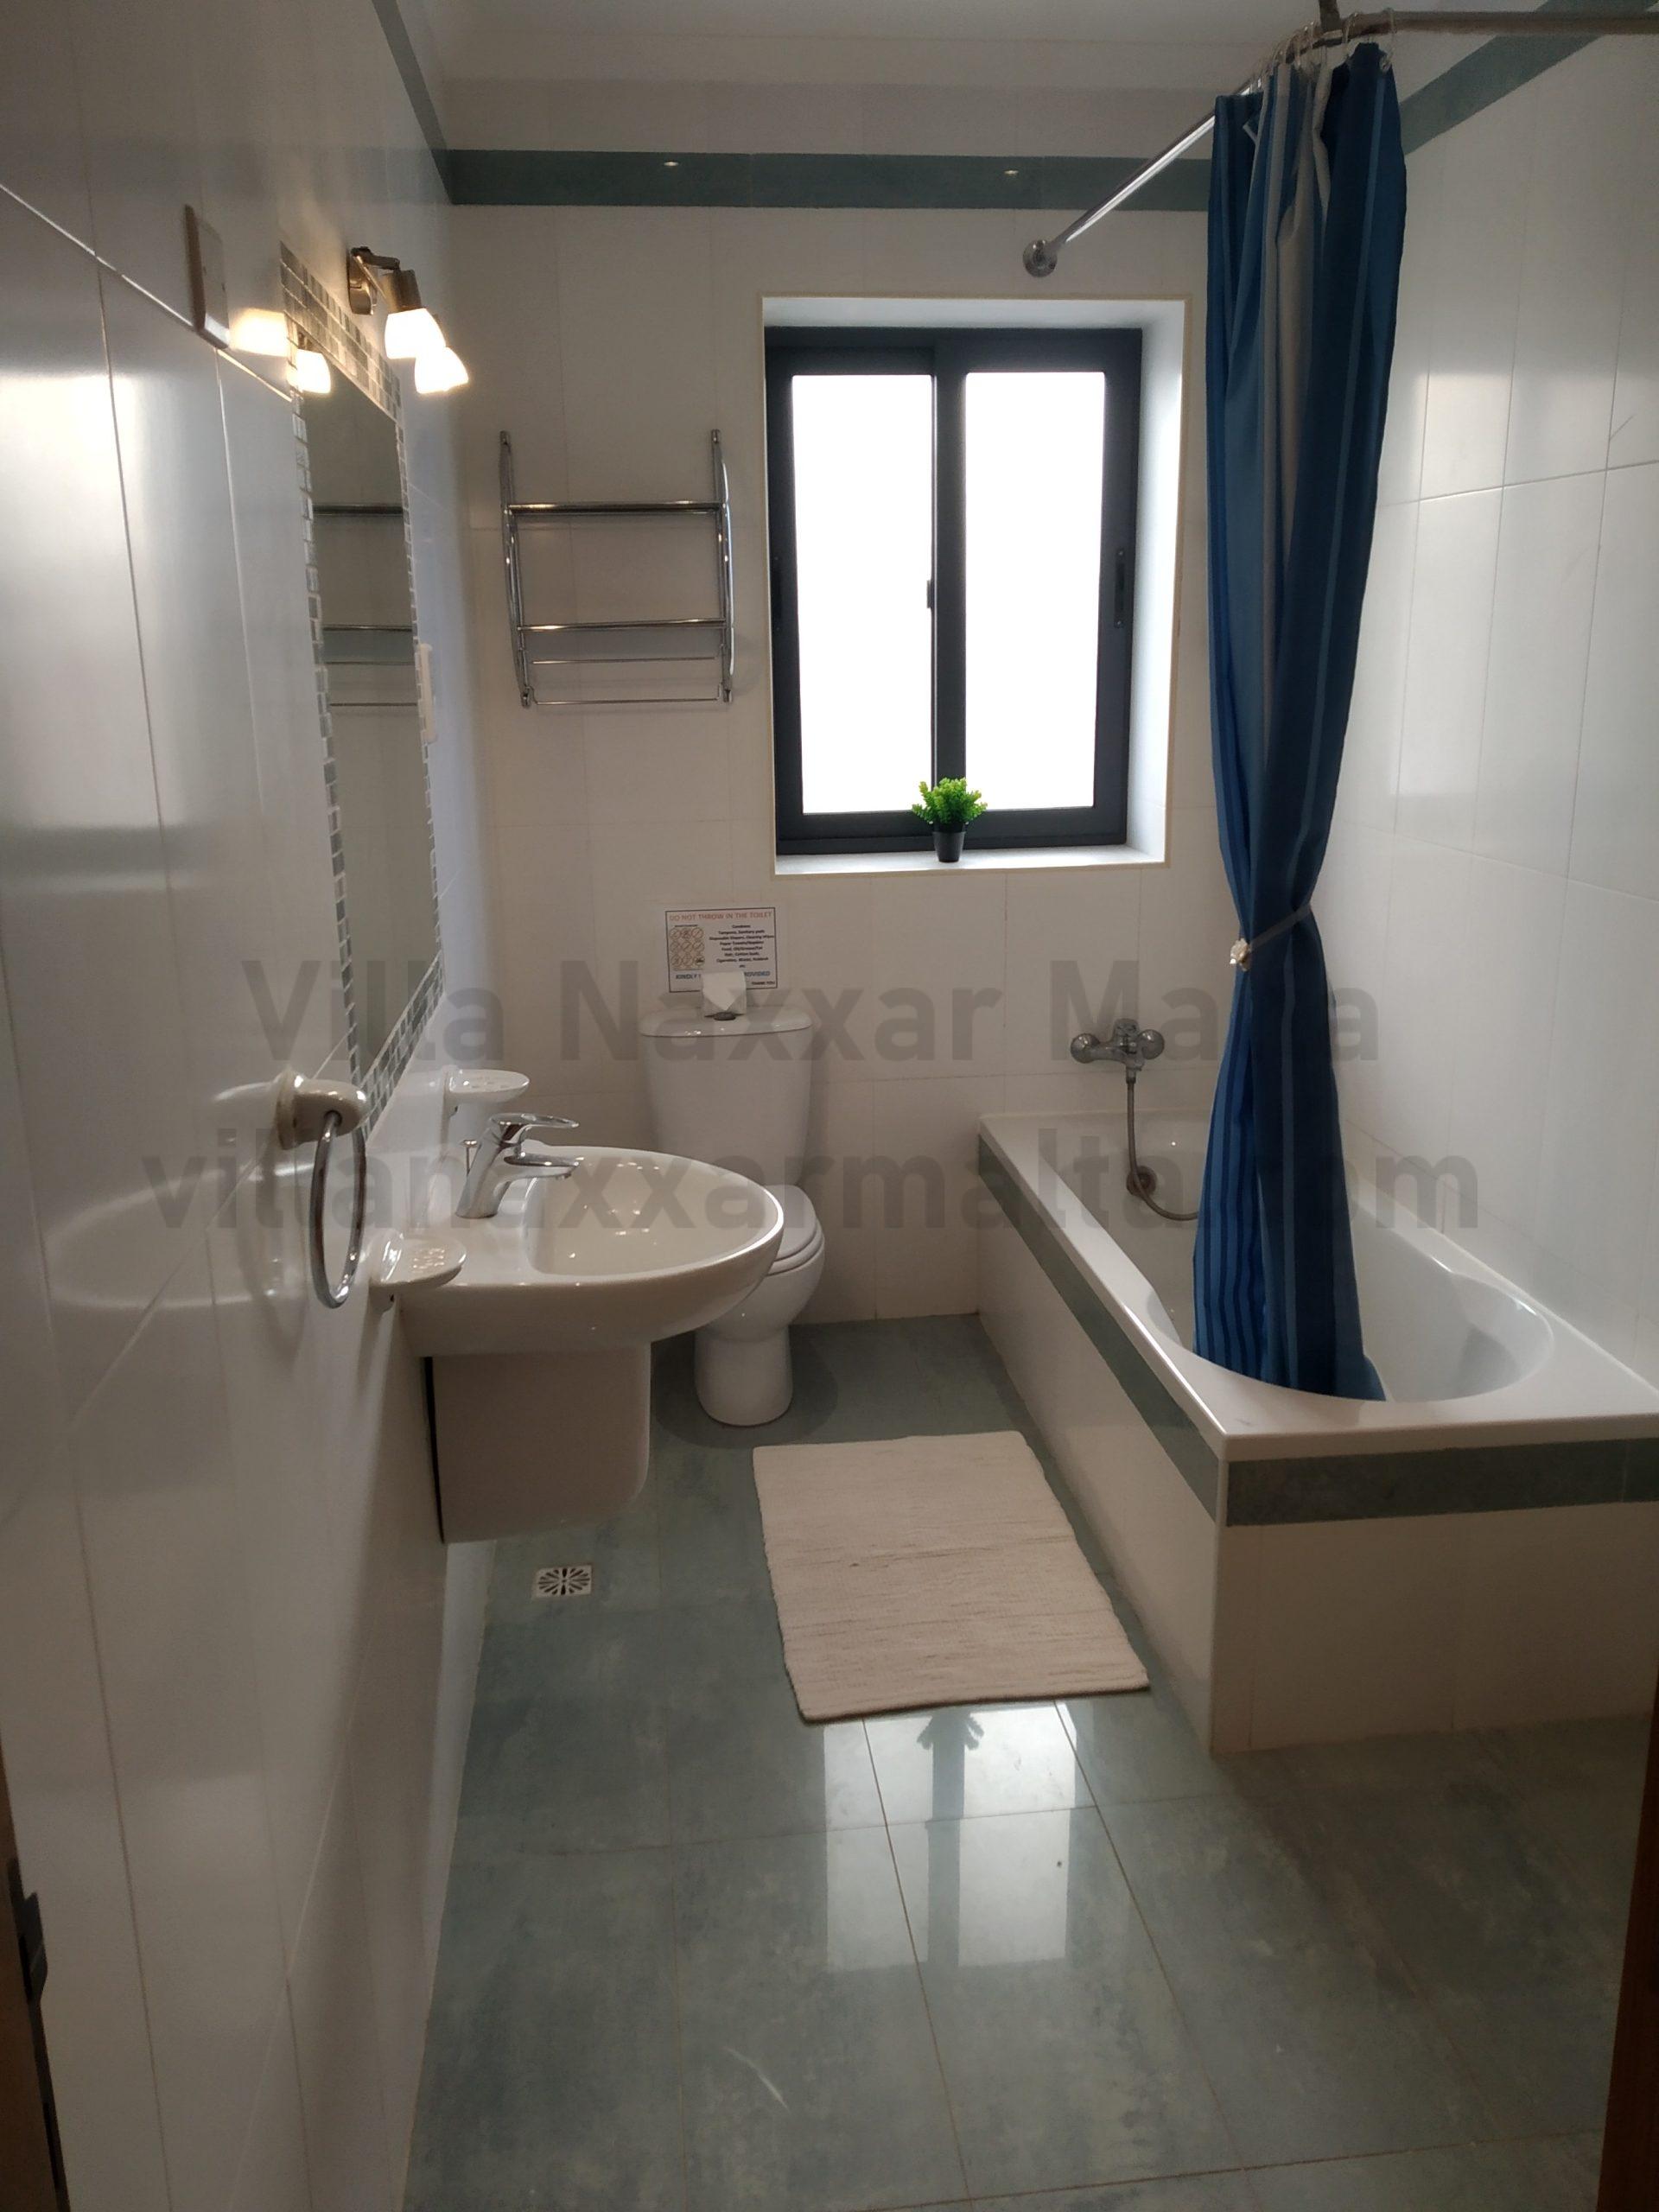 Villa Naxxar Malta - Bathroom Ensuite with Main Bedroom